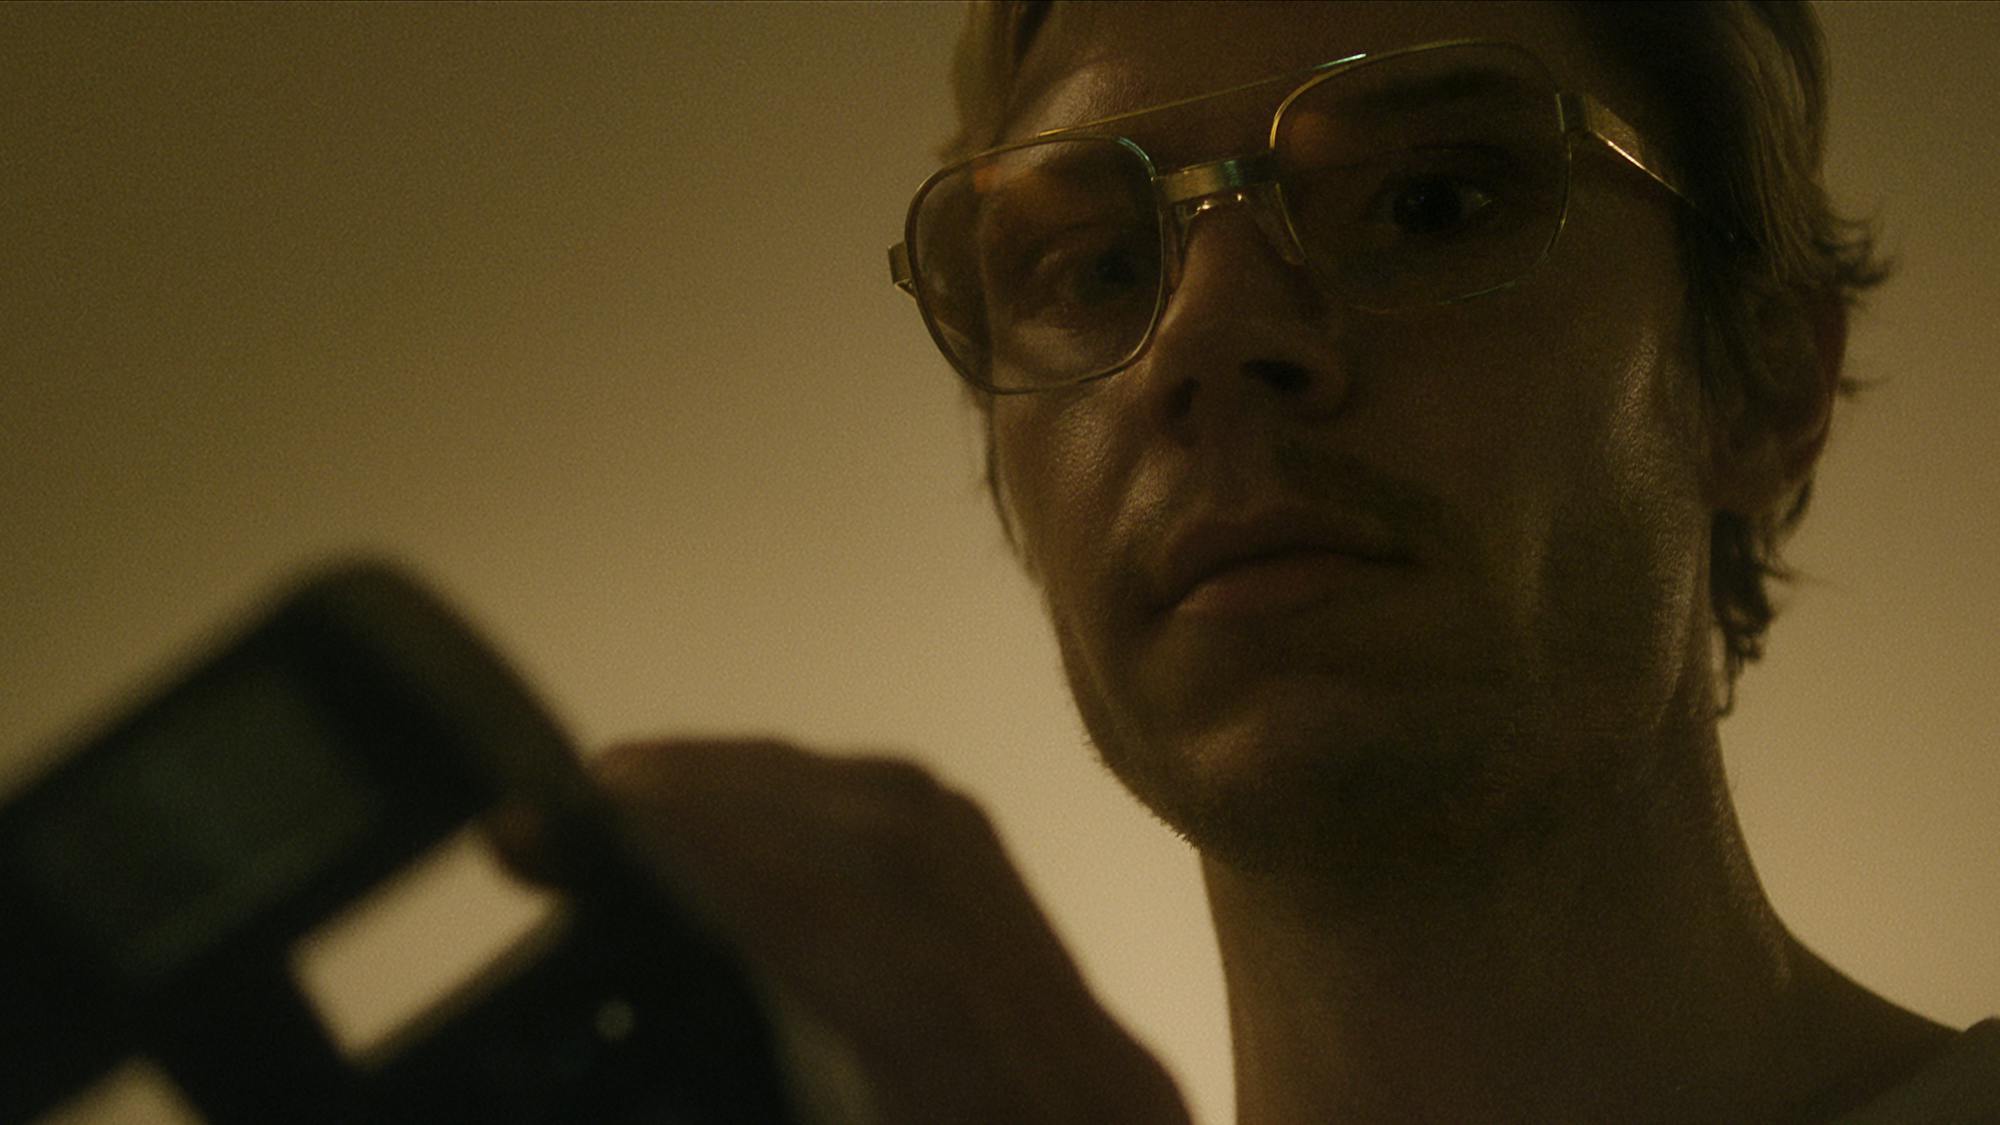 Jeffrey Dahmer (Evan Peters) holds something in this darkened photo.